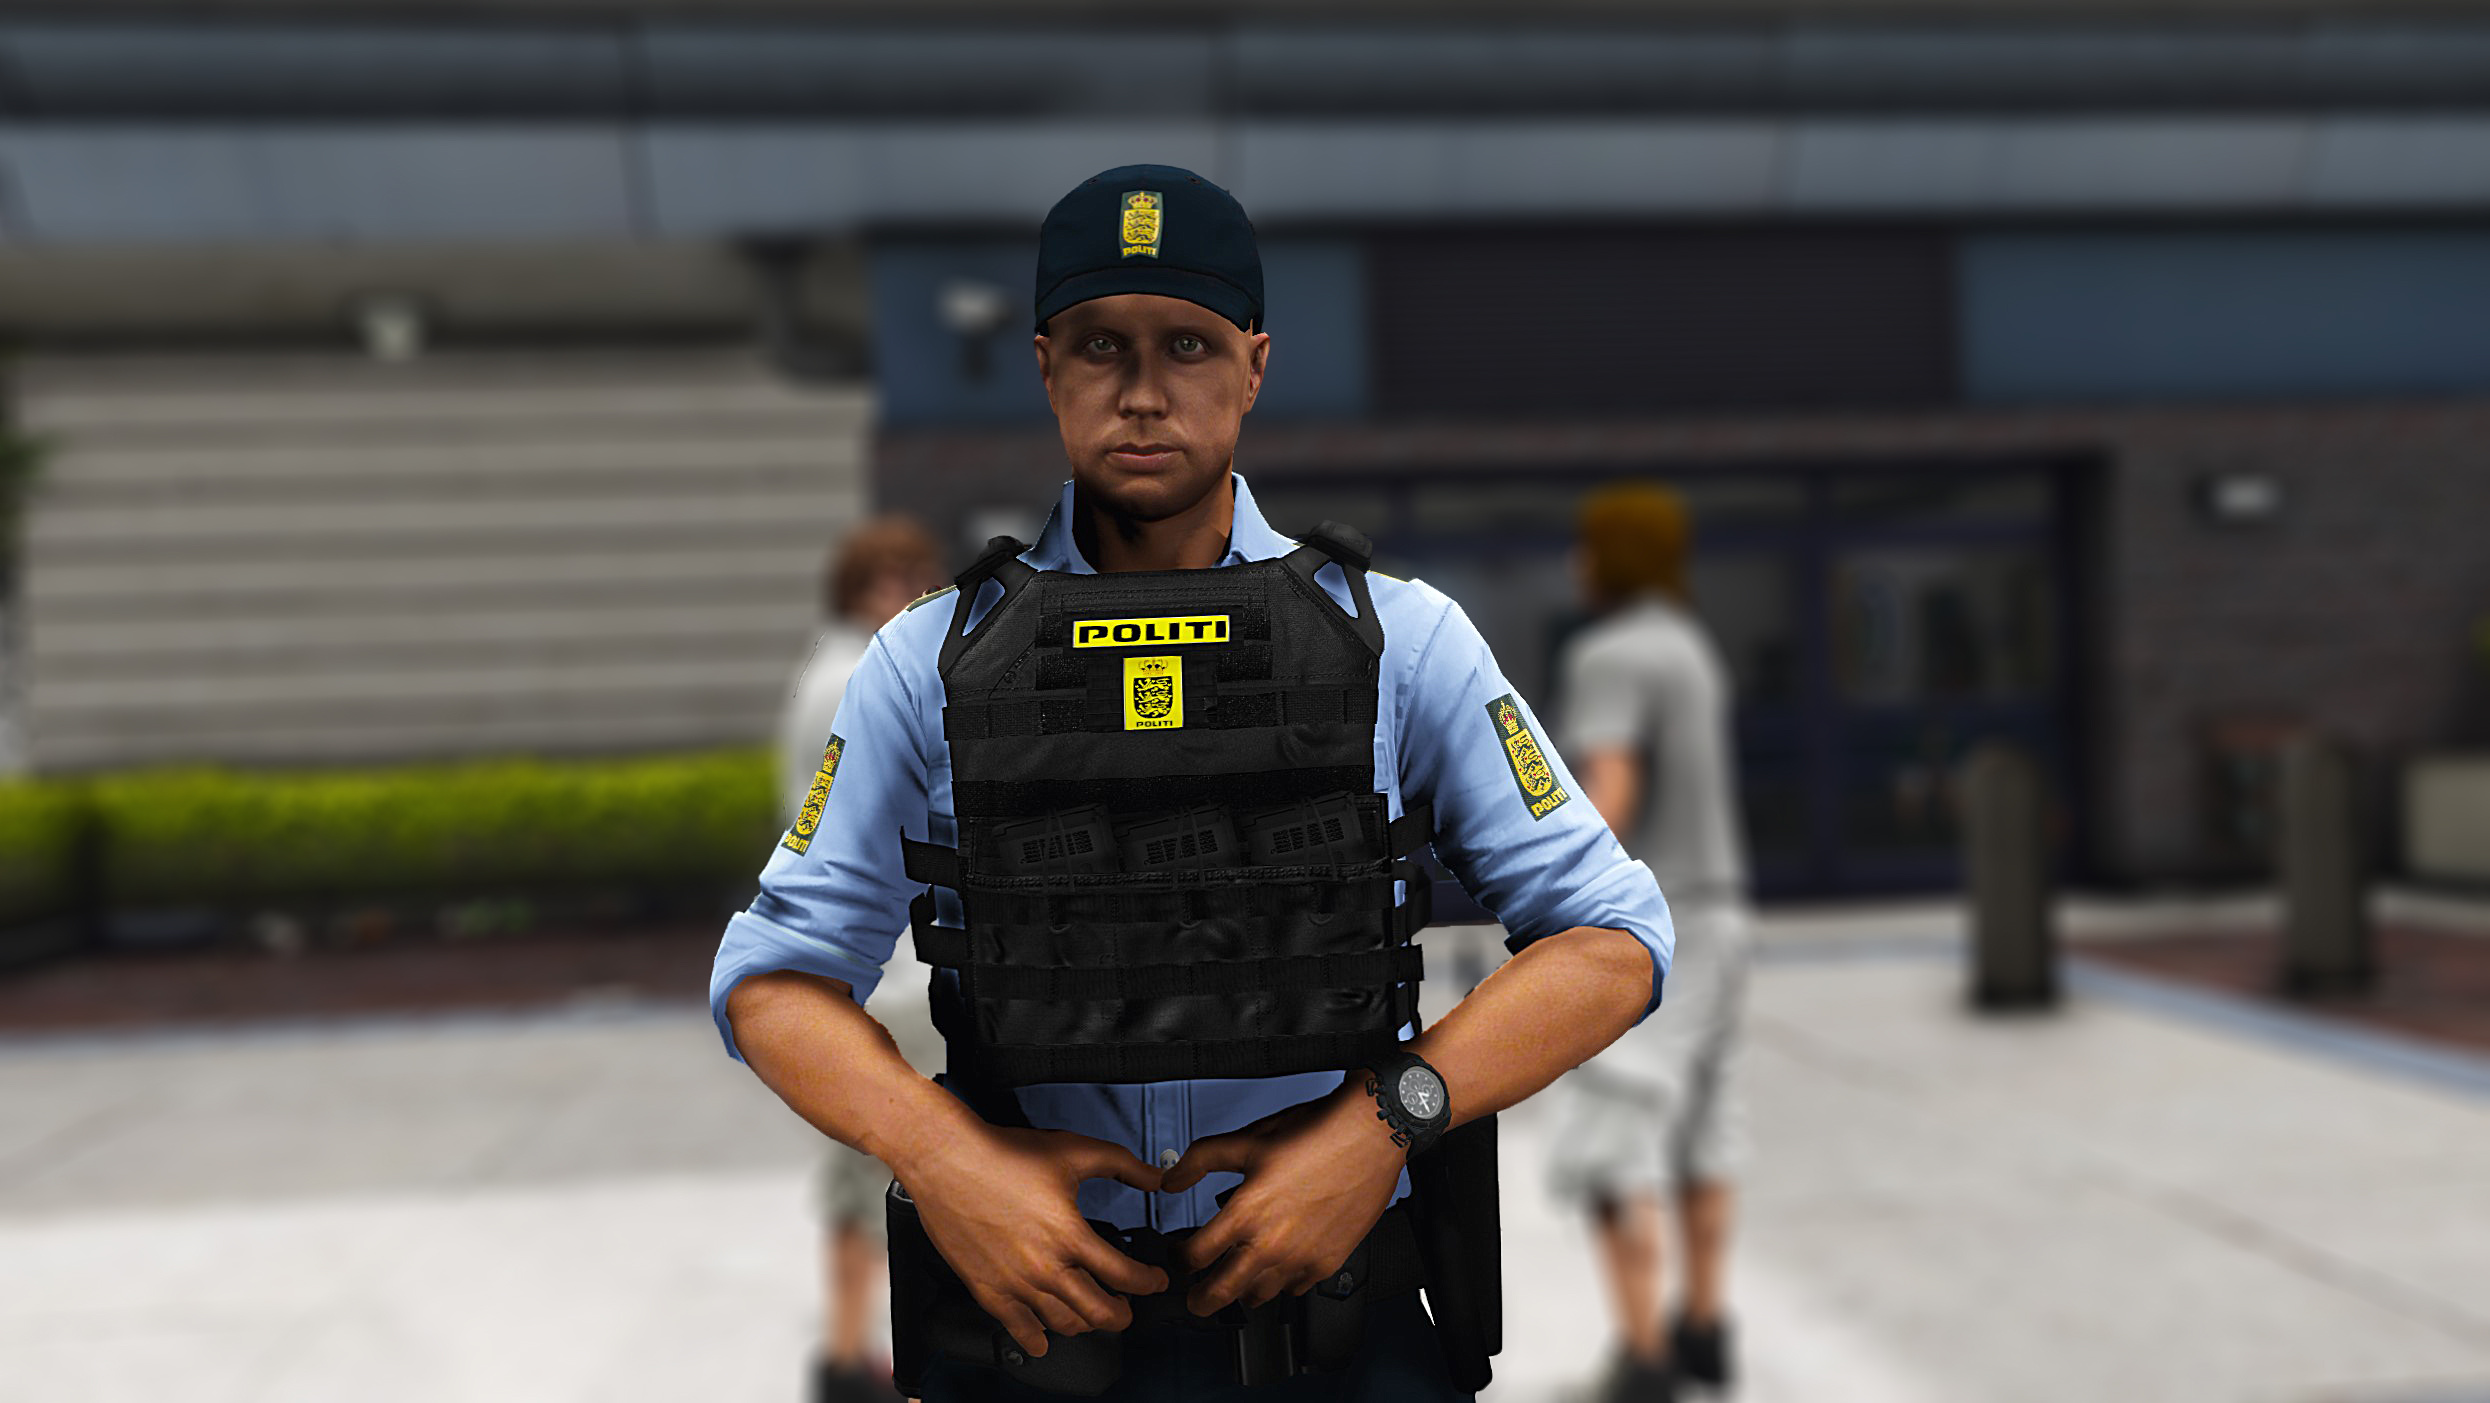 Jpc Police Vest Danish Skin Gta Mods